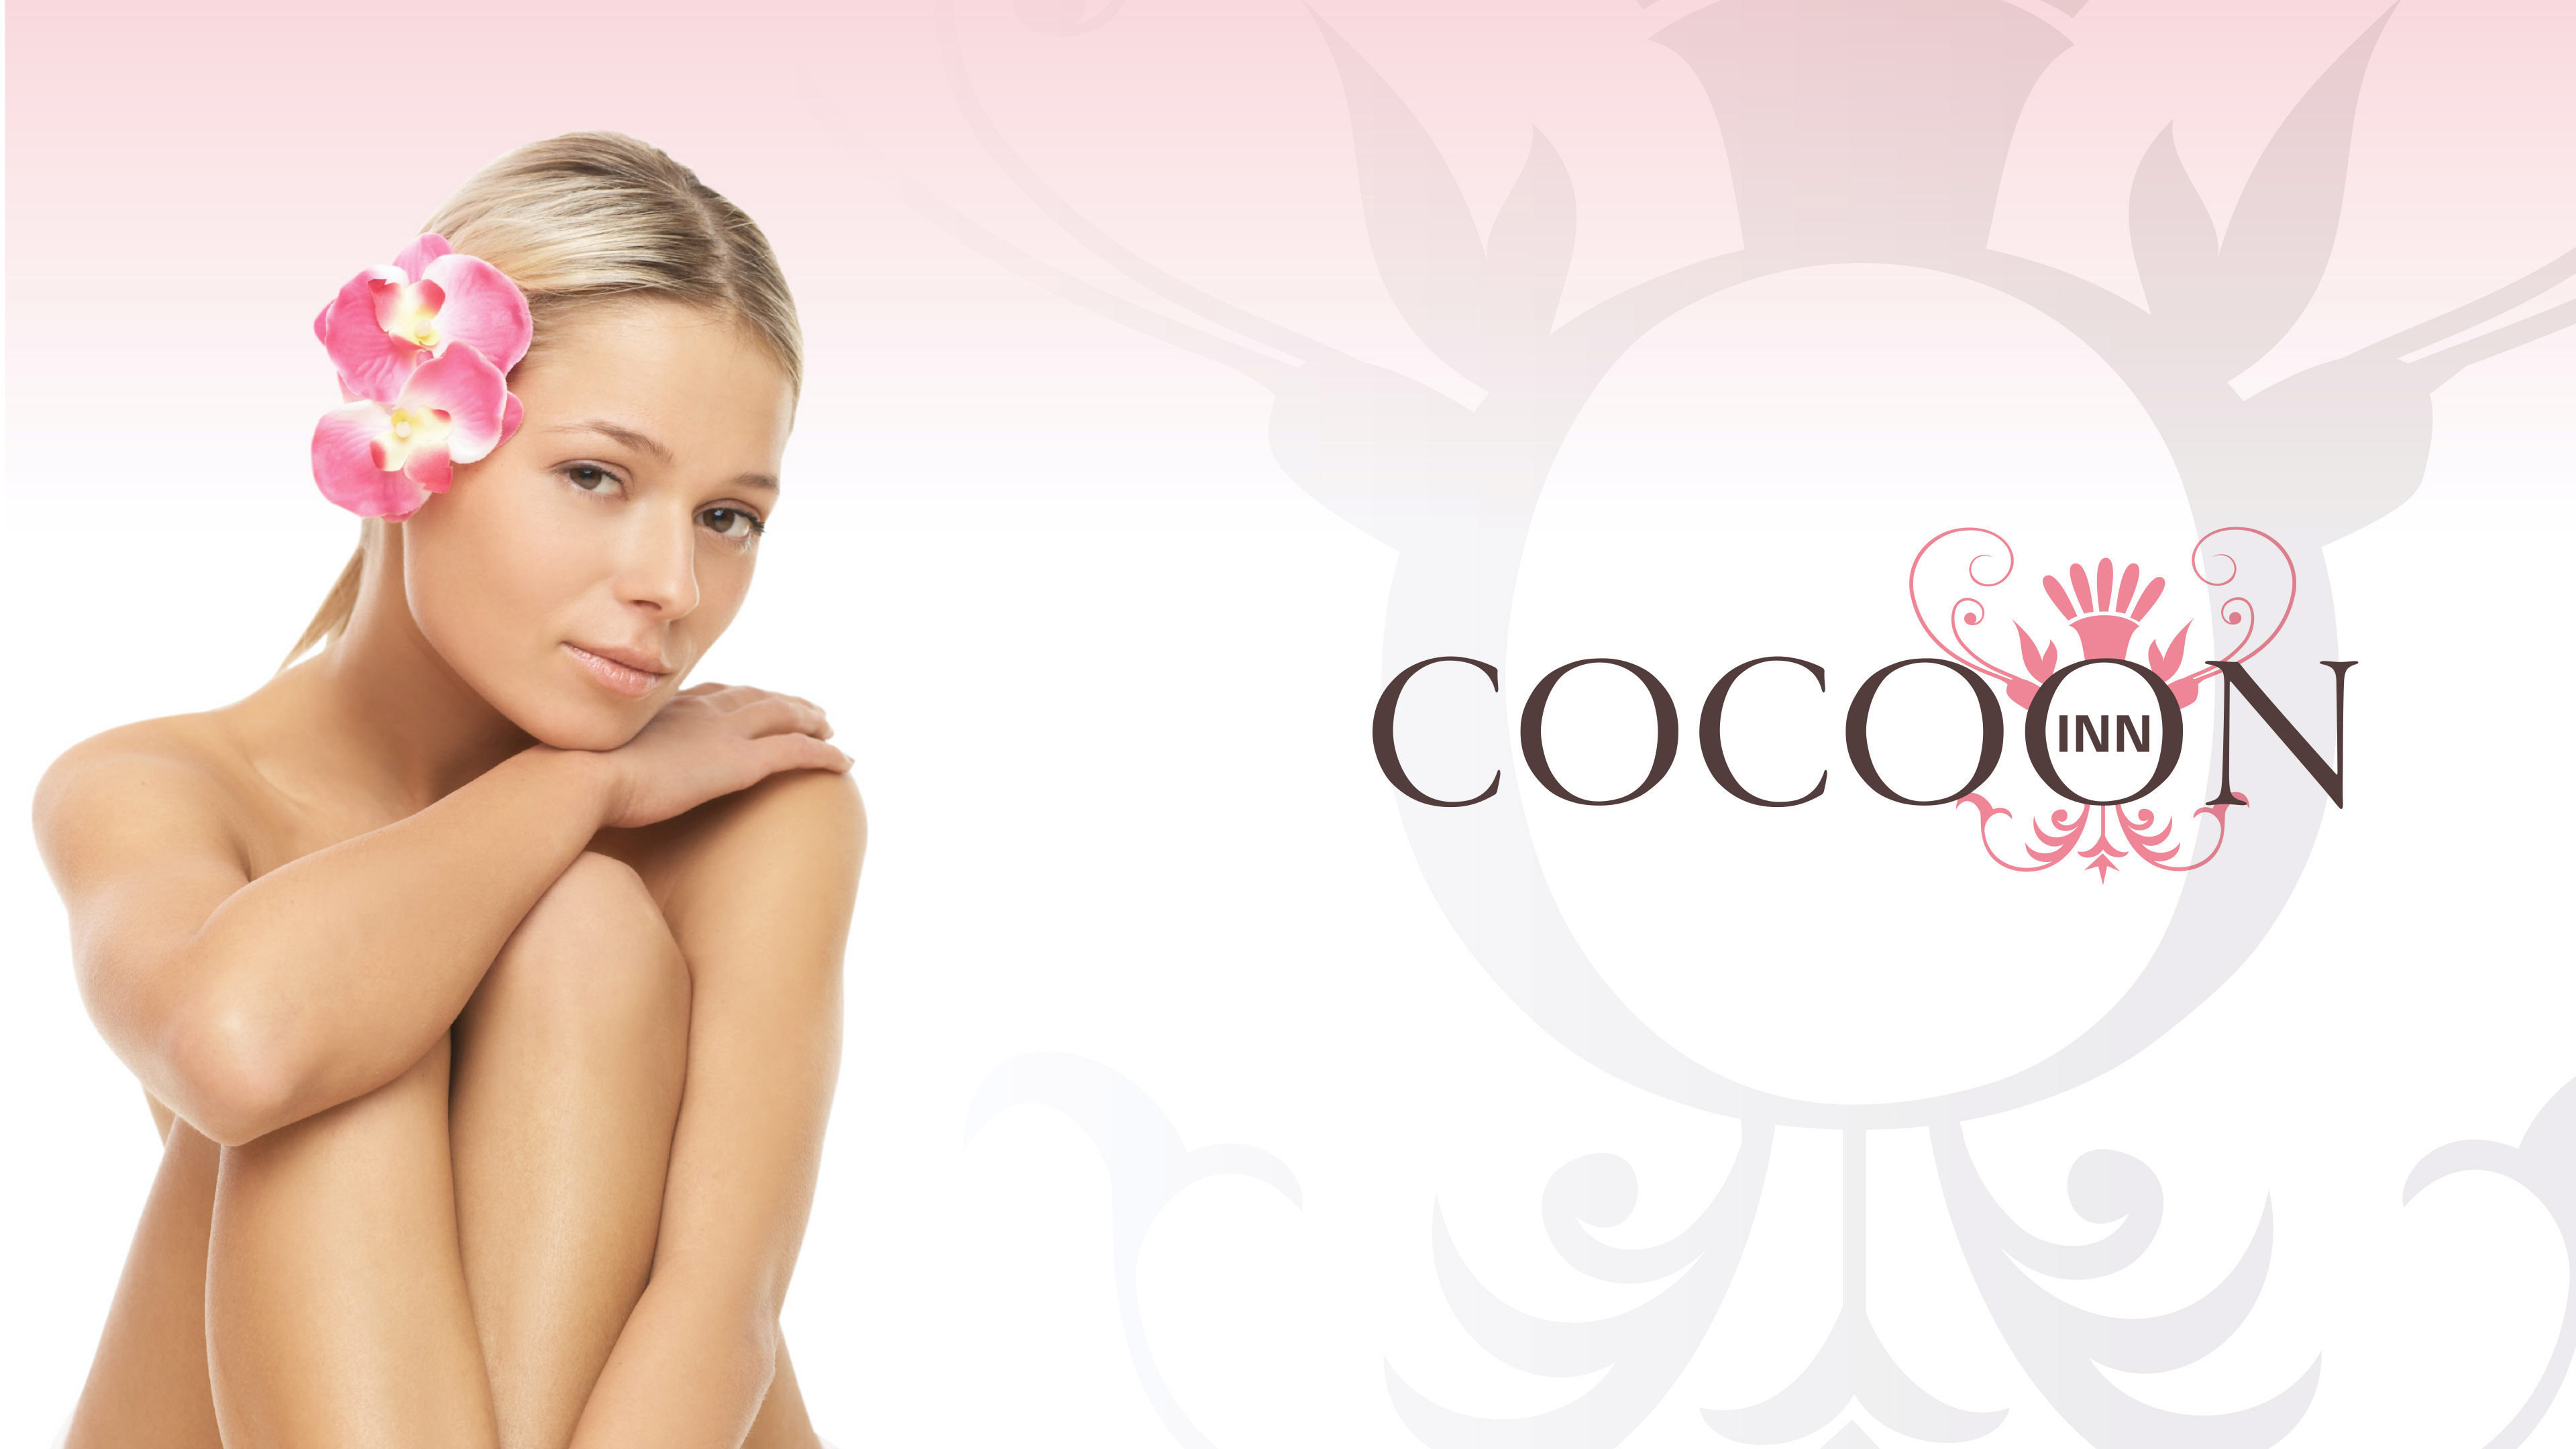 Logo von Cocoon Inn und Wellness-Model mit Blume im Haar